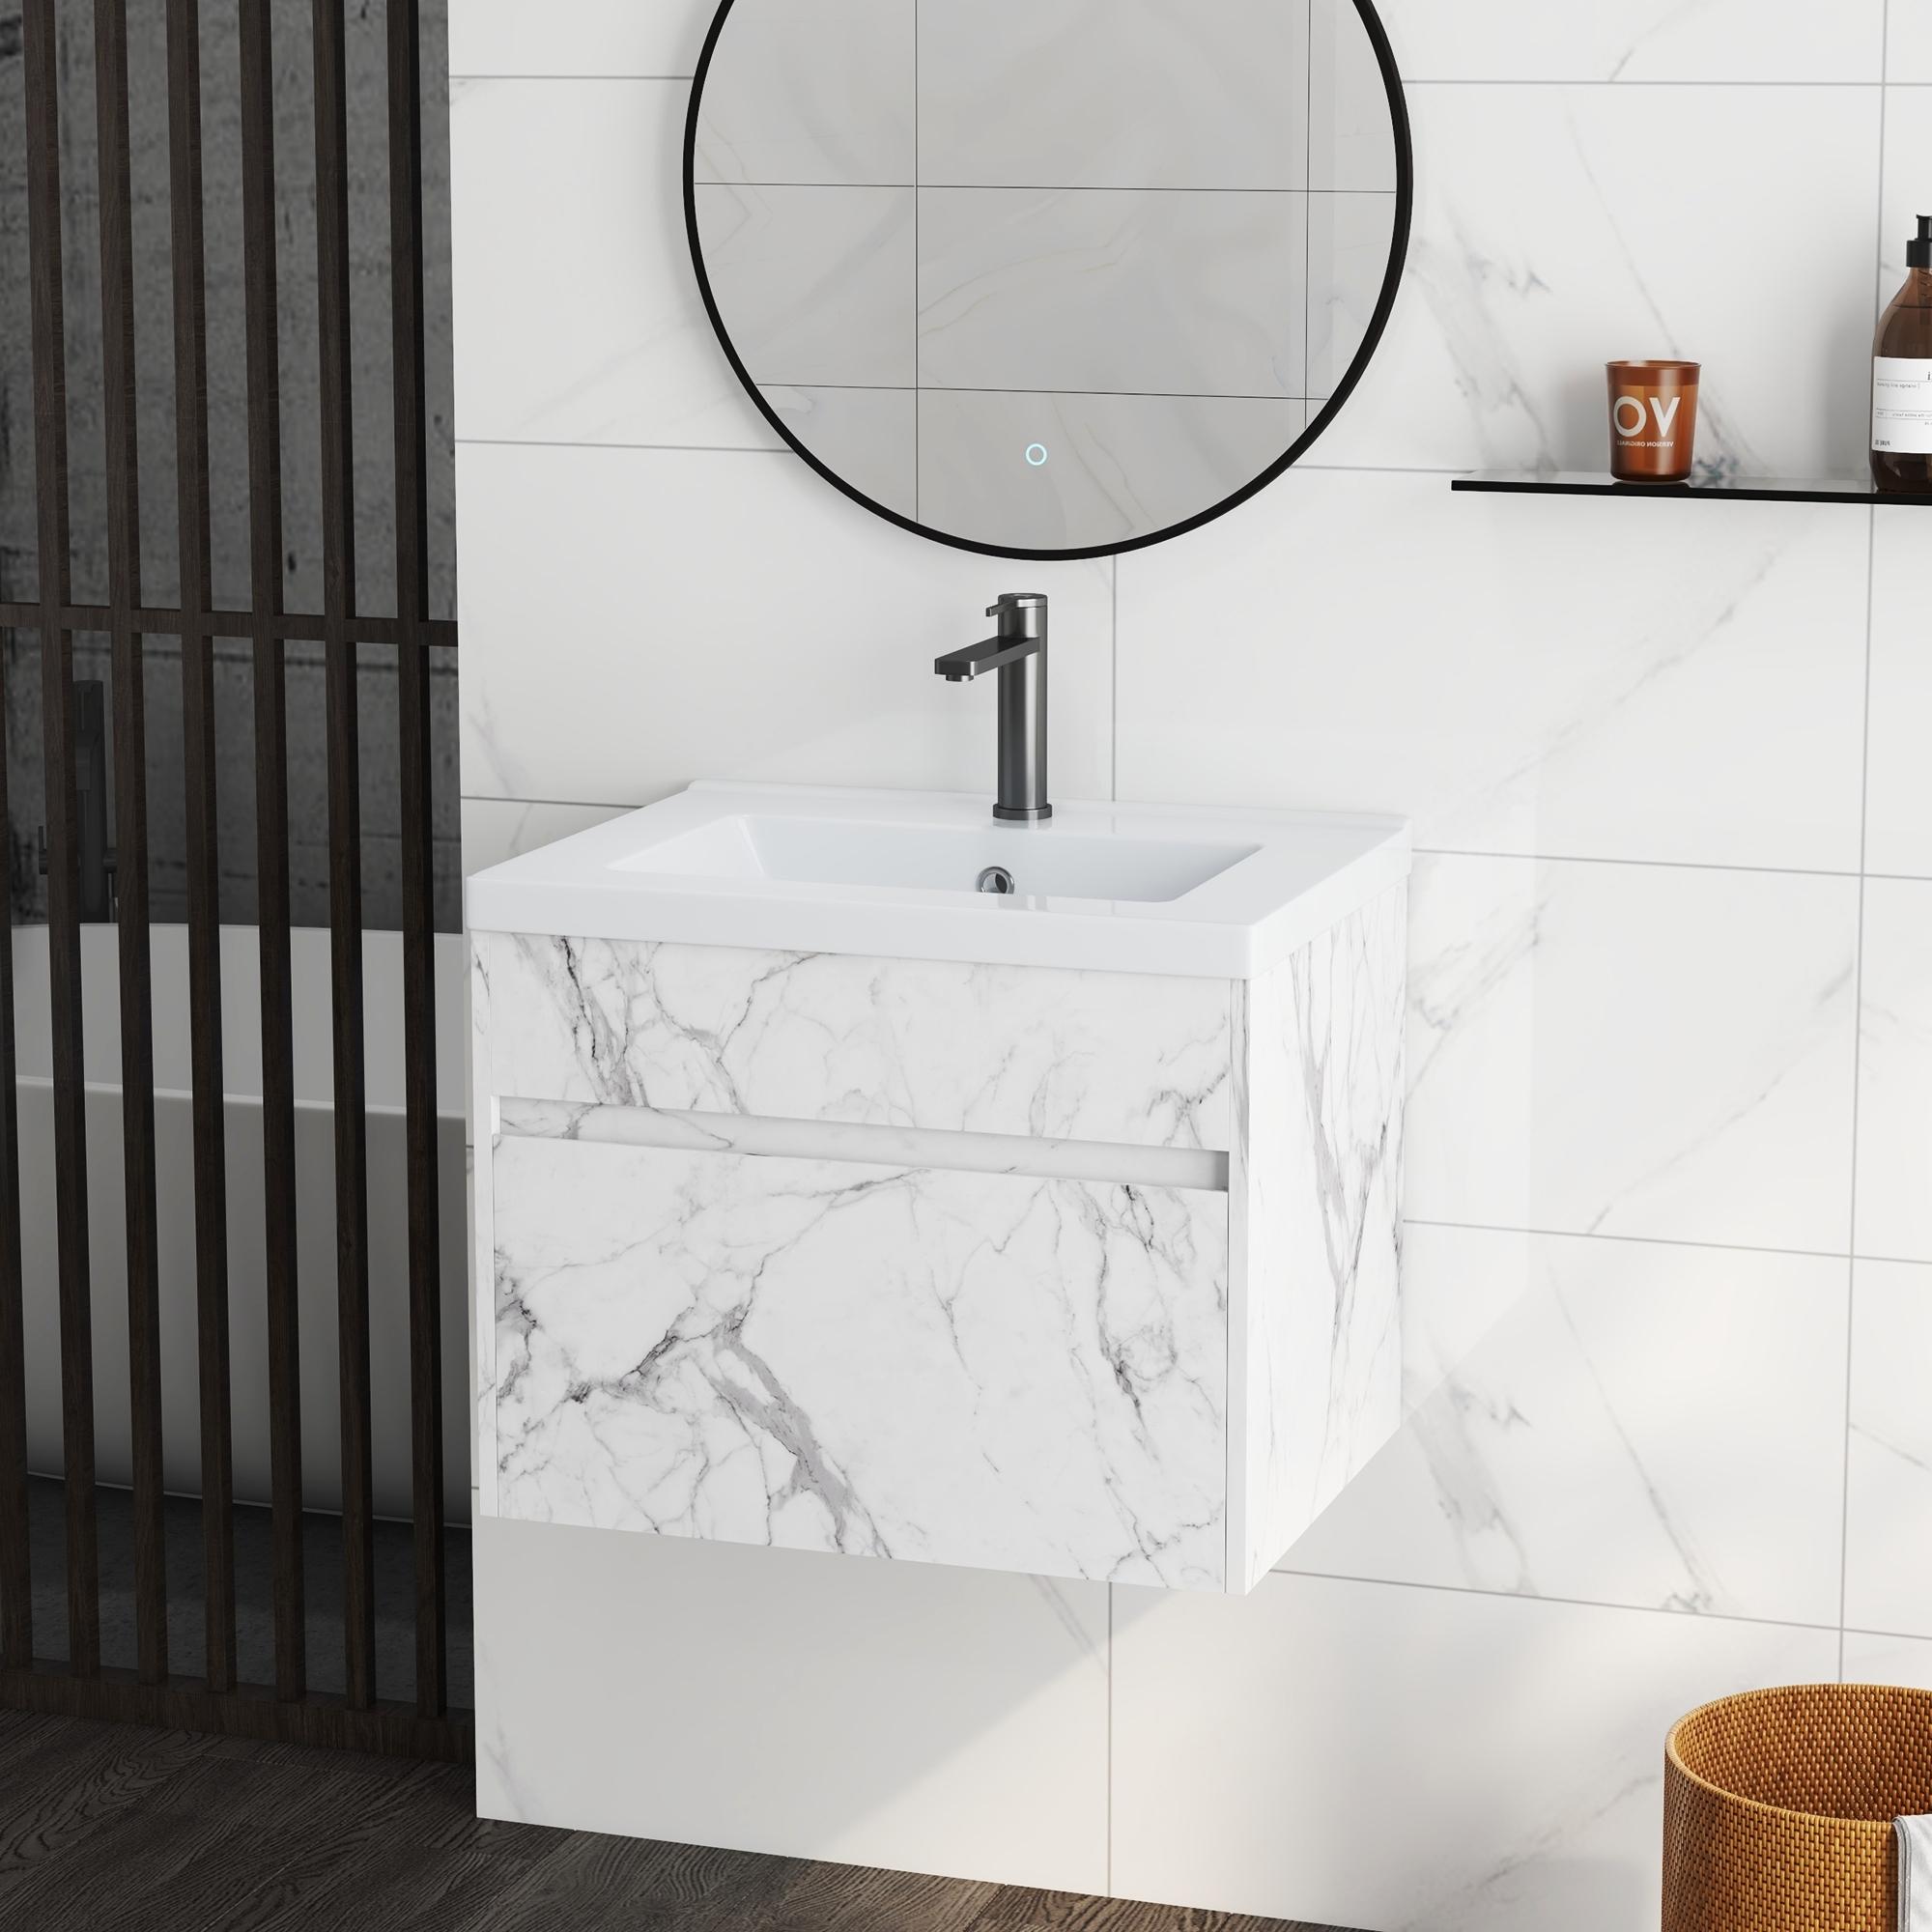 Meuble sous-vasque suspendu - vasque céramique incluse - tiroir coulissant - dim. 60L x 45l x 45H cm - aspect marbre blanc